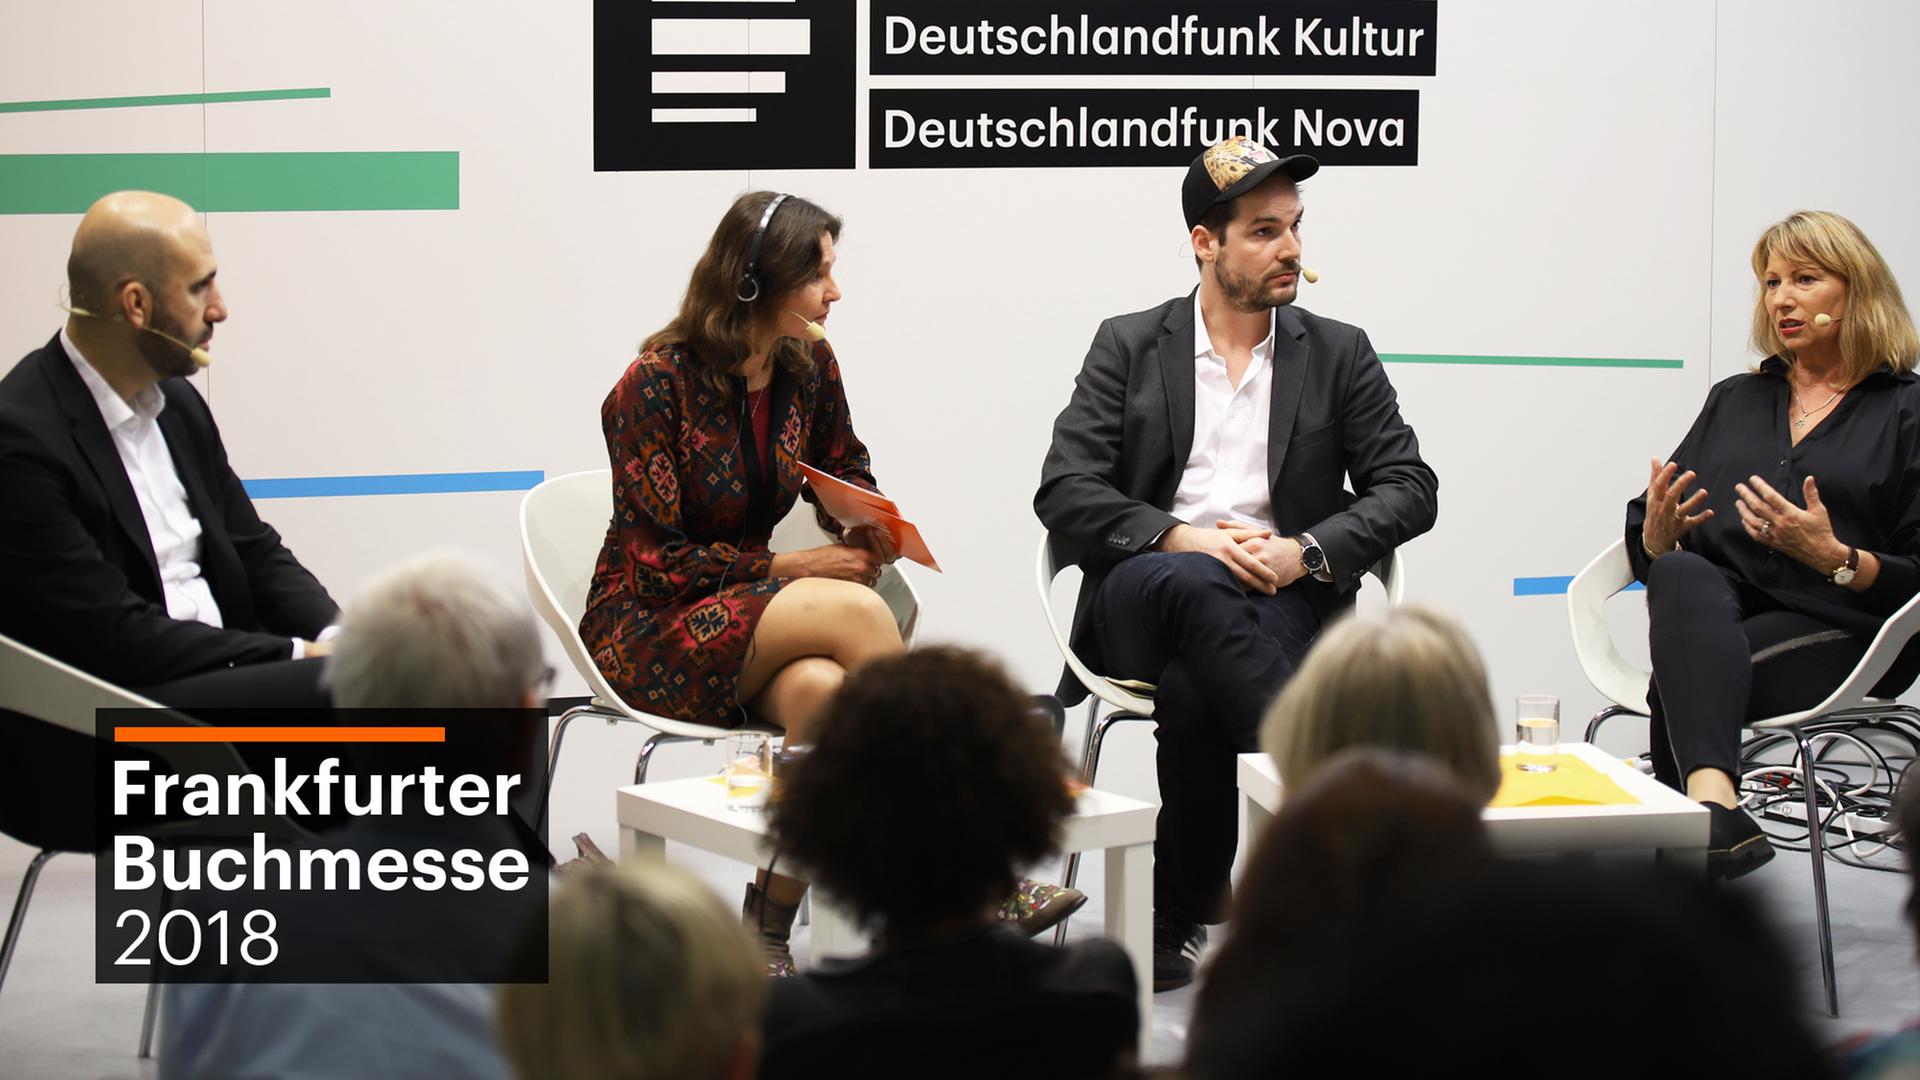  Ahmad Mansour, Maike Albath, Max Czollek und Petra Köpping sitzen auf der Frankfurter Buchmesse 2018 im Kreis und sprechen miteinander.